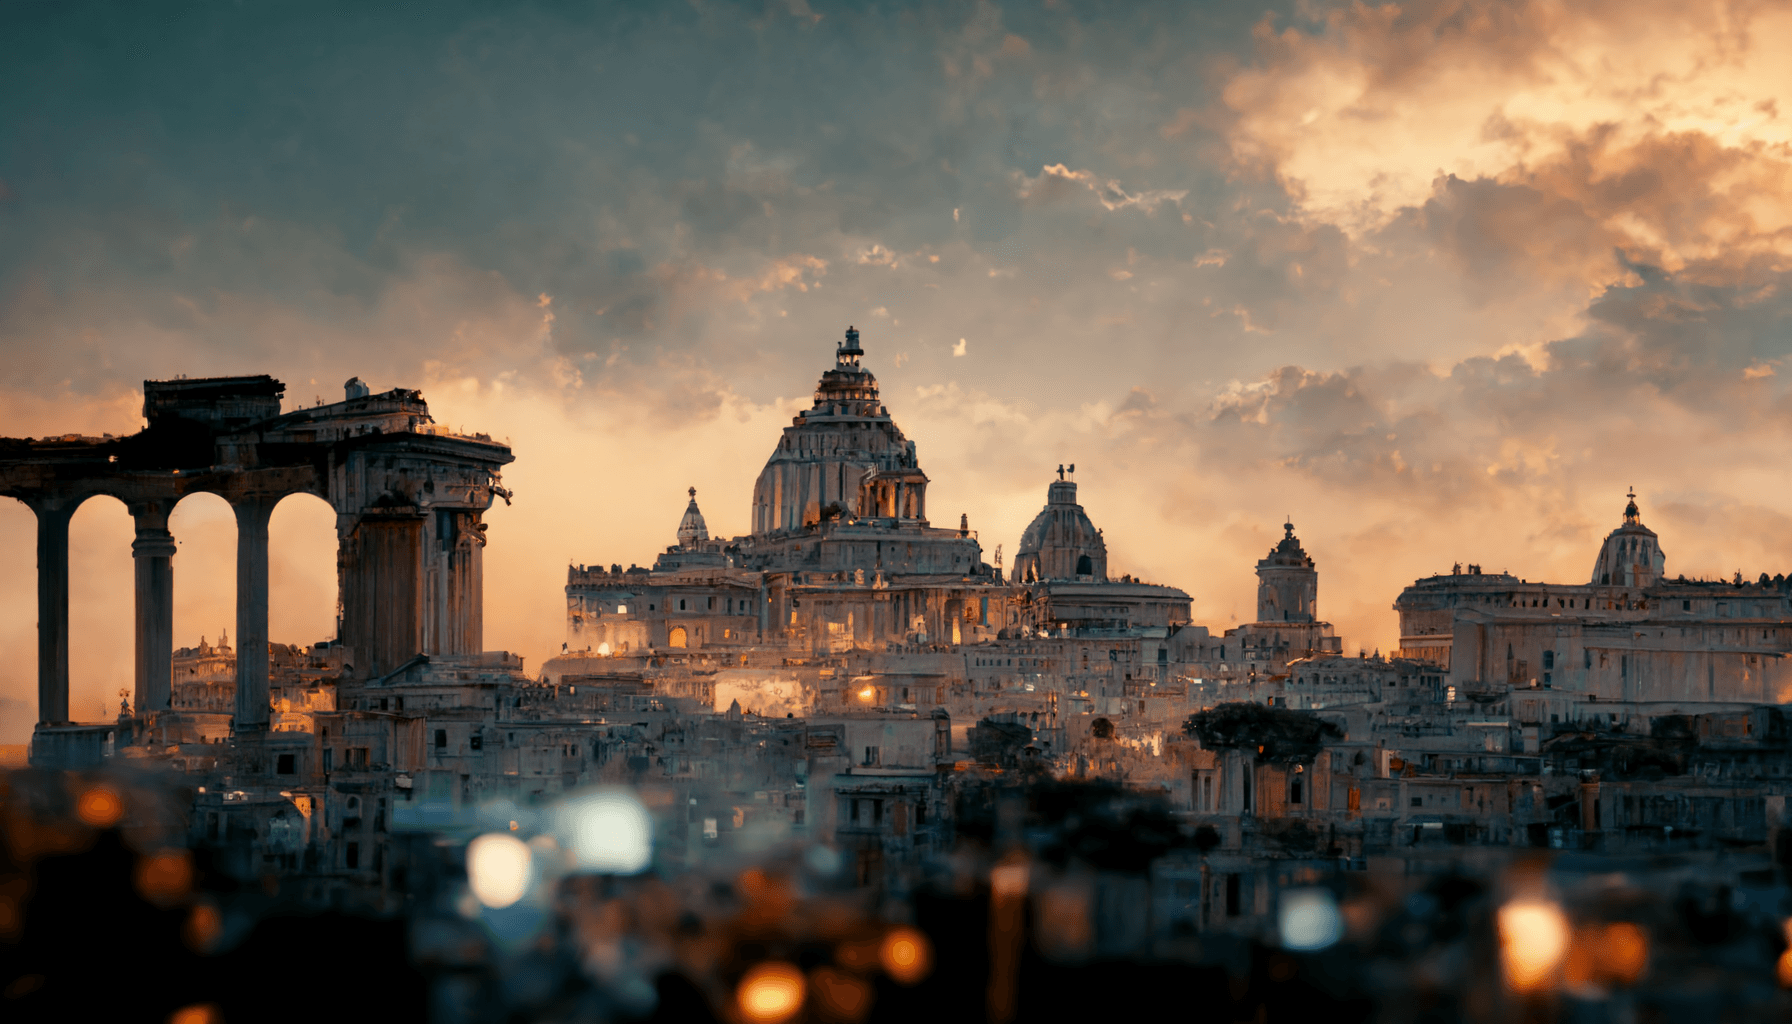 "Rome Skyline"